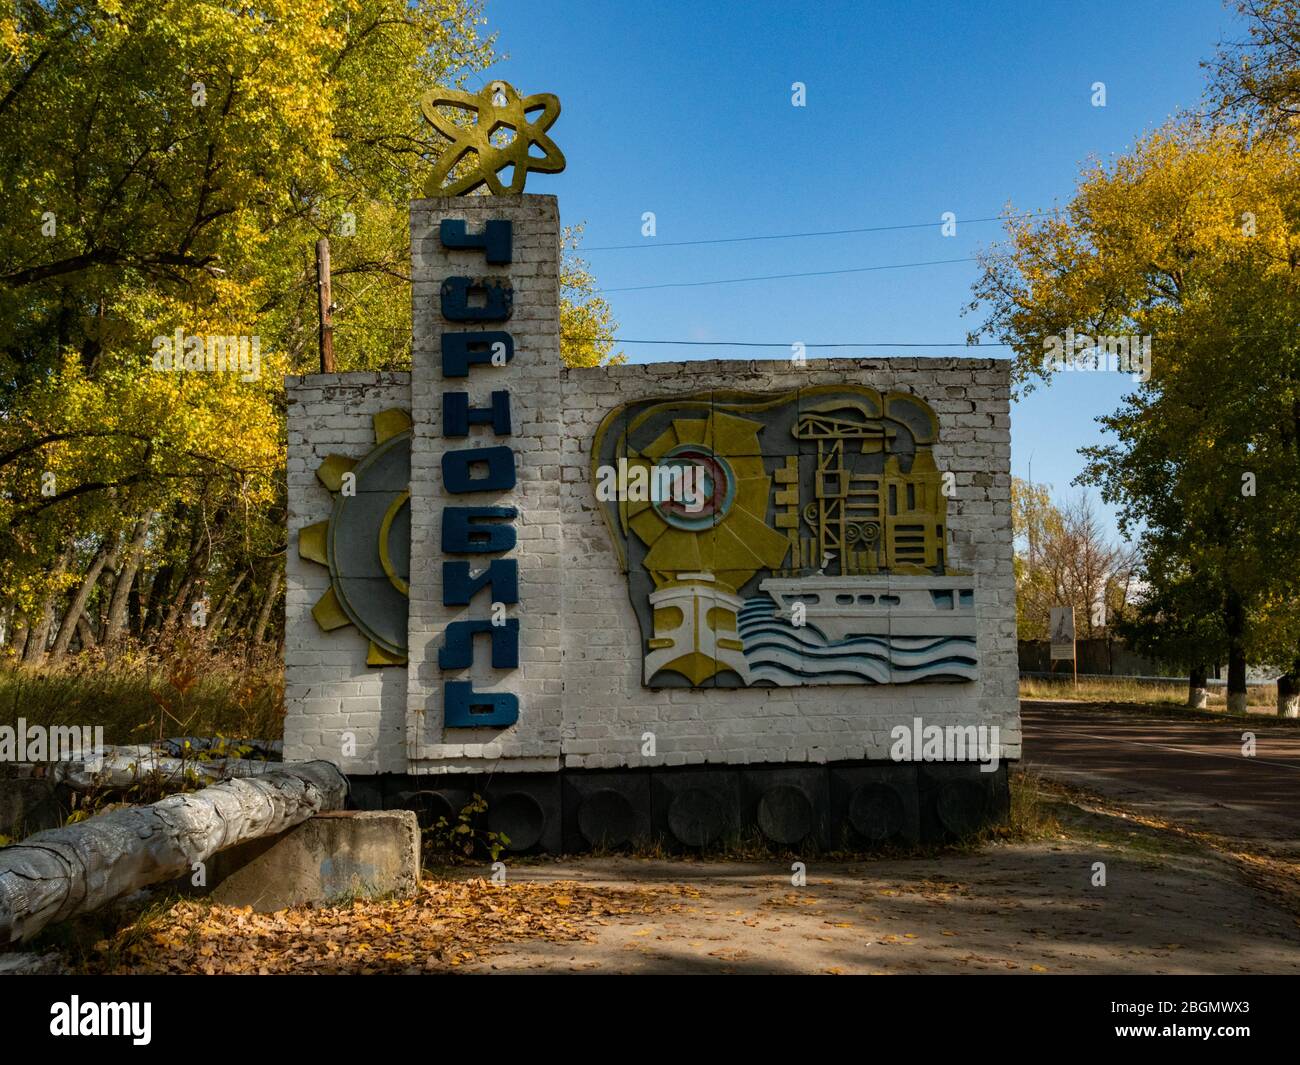 Cartello della città all'ingresso della città abbandonata di Cernobyl in Ucraina, il cartello mostra il nome Cernobyl in lettere cirilliche in direzione verticale Foto Stock